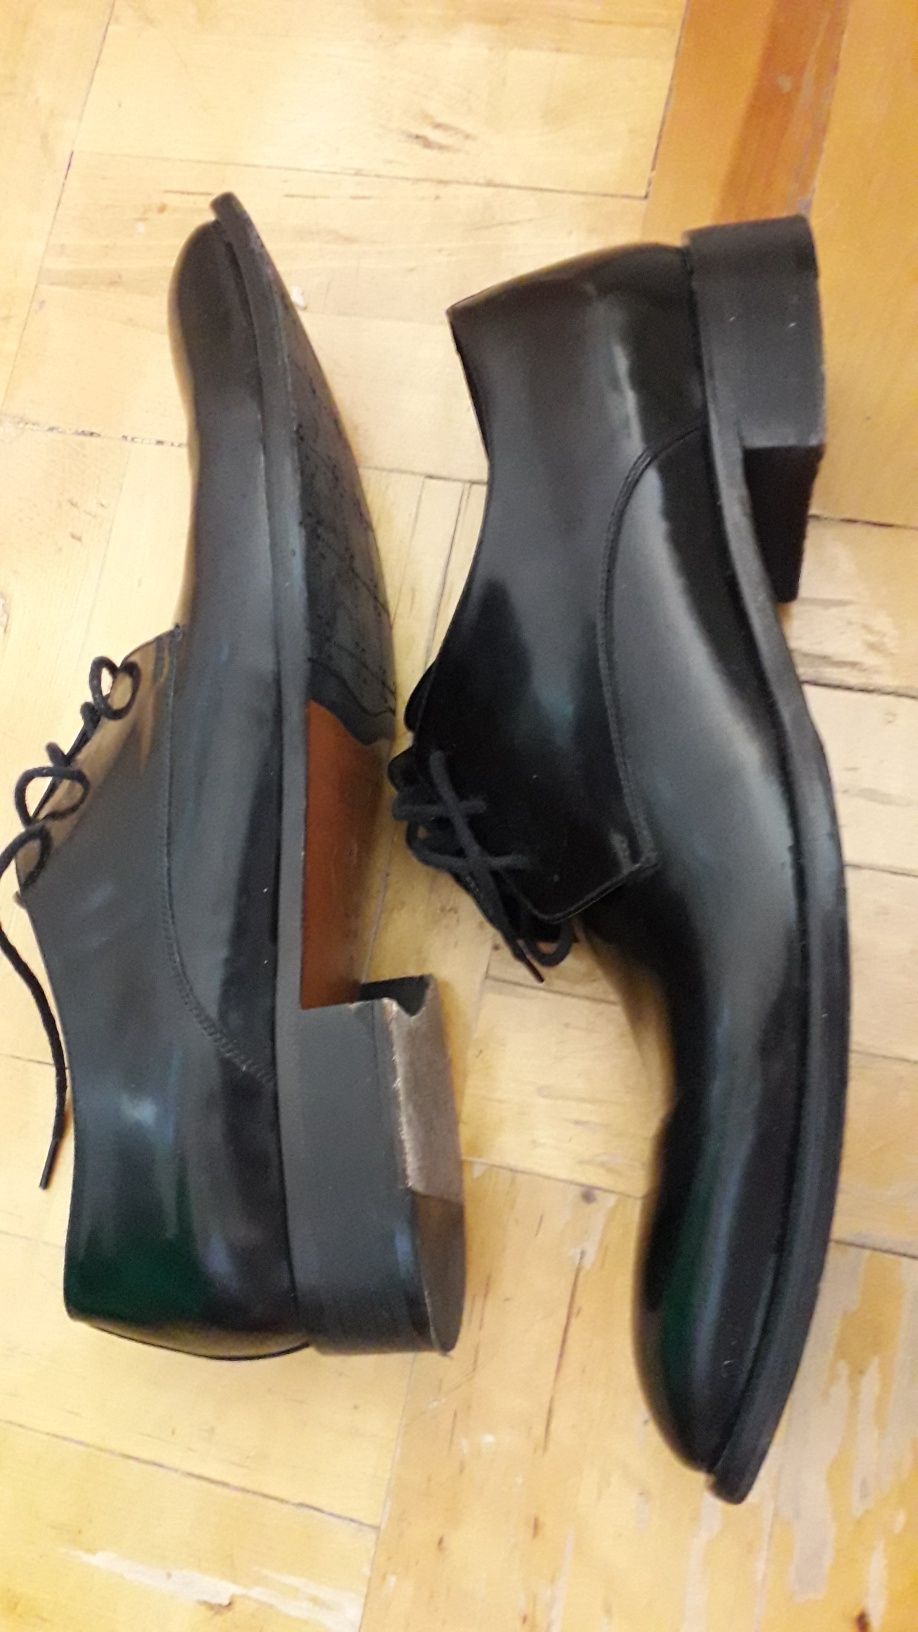 Туфли мужские Mario Bruni, Италия, кожаные демисезонные, осенние, весе